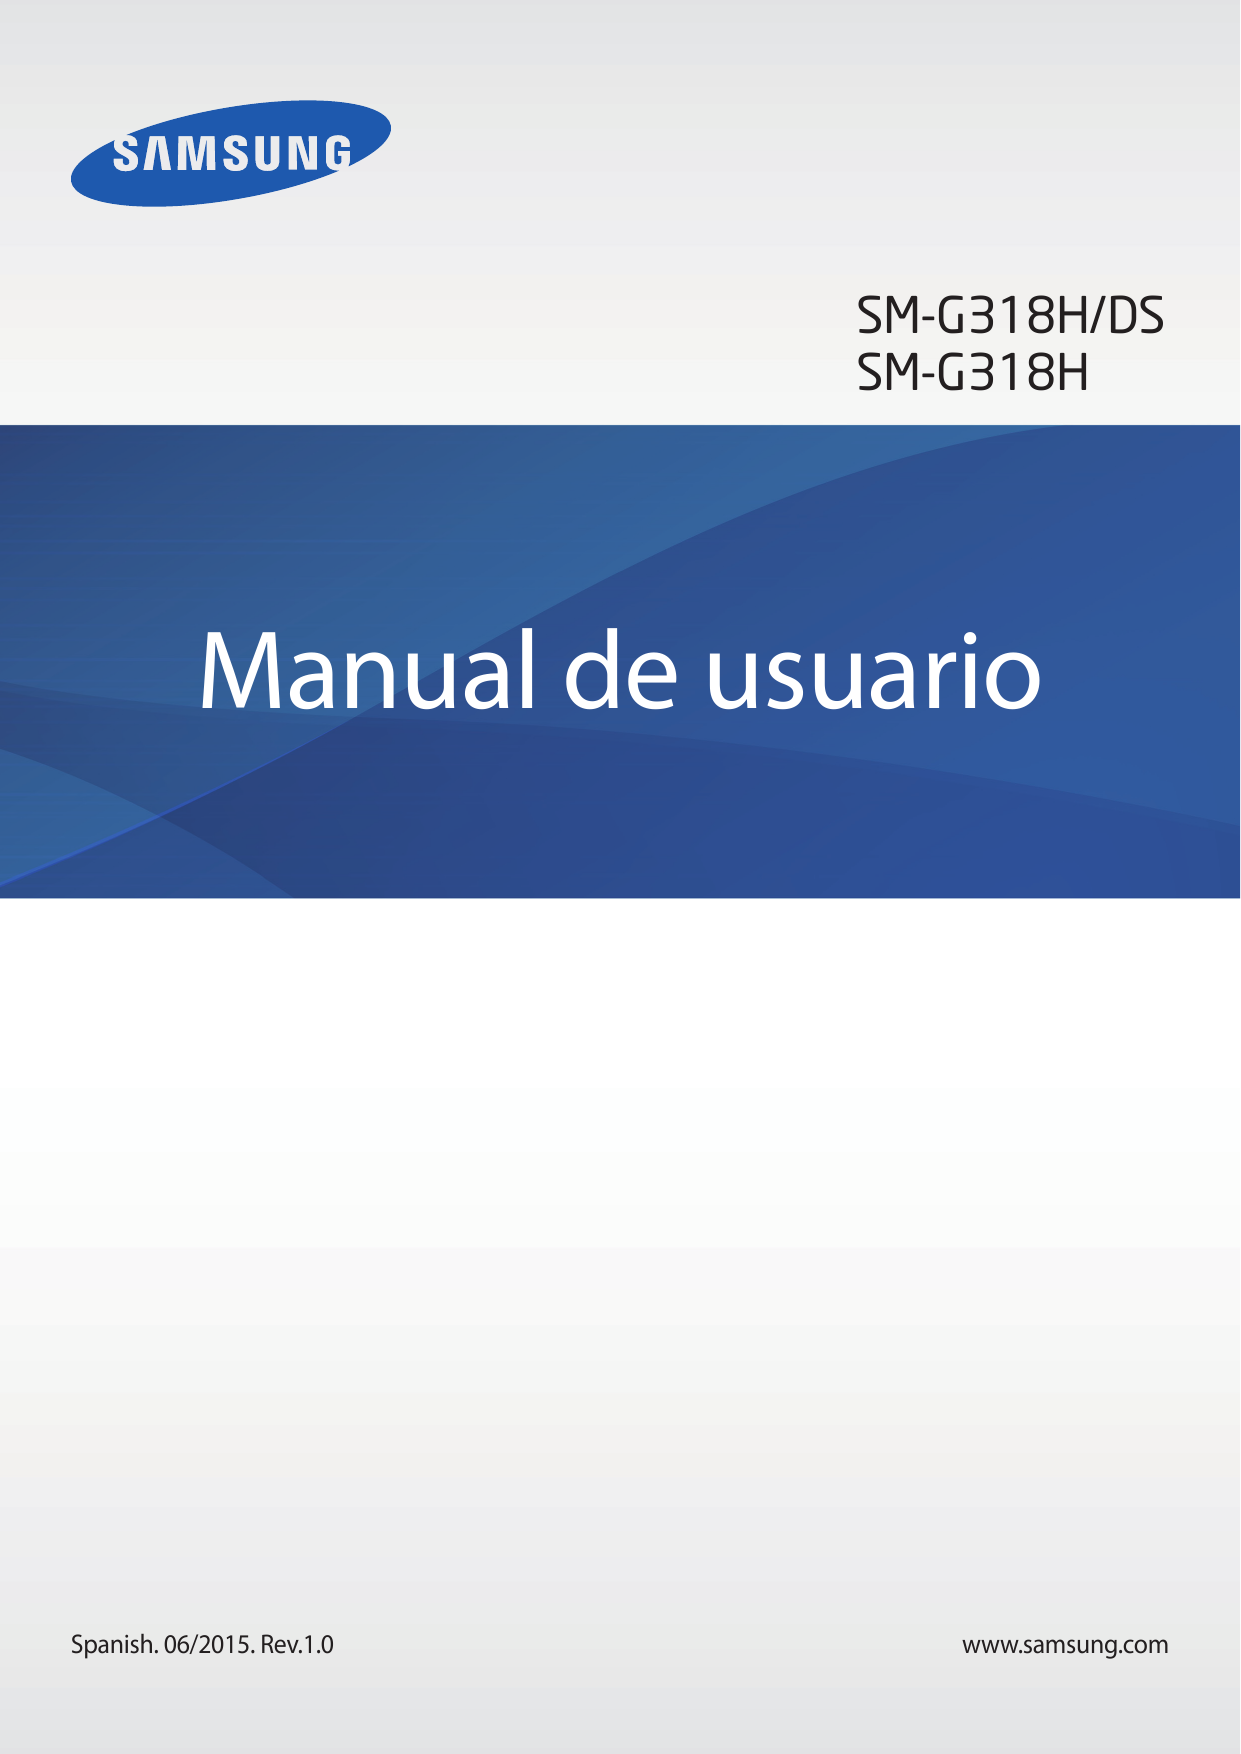 SM-G318H/DSSM-G318HManual de usuarioSpanish. 06/2015. Rev.1.0www.samsung.com